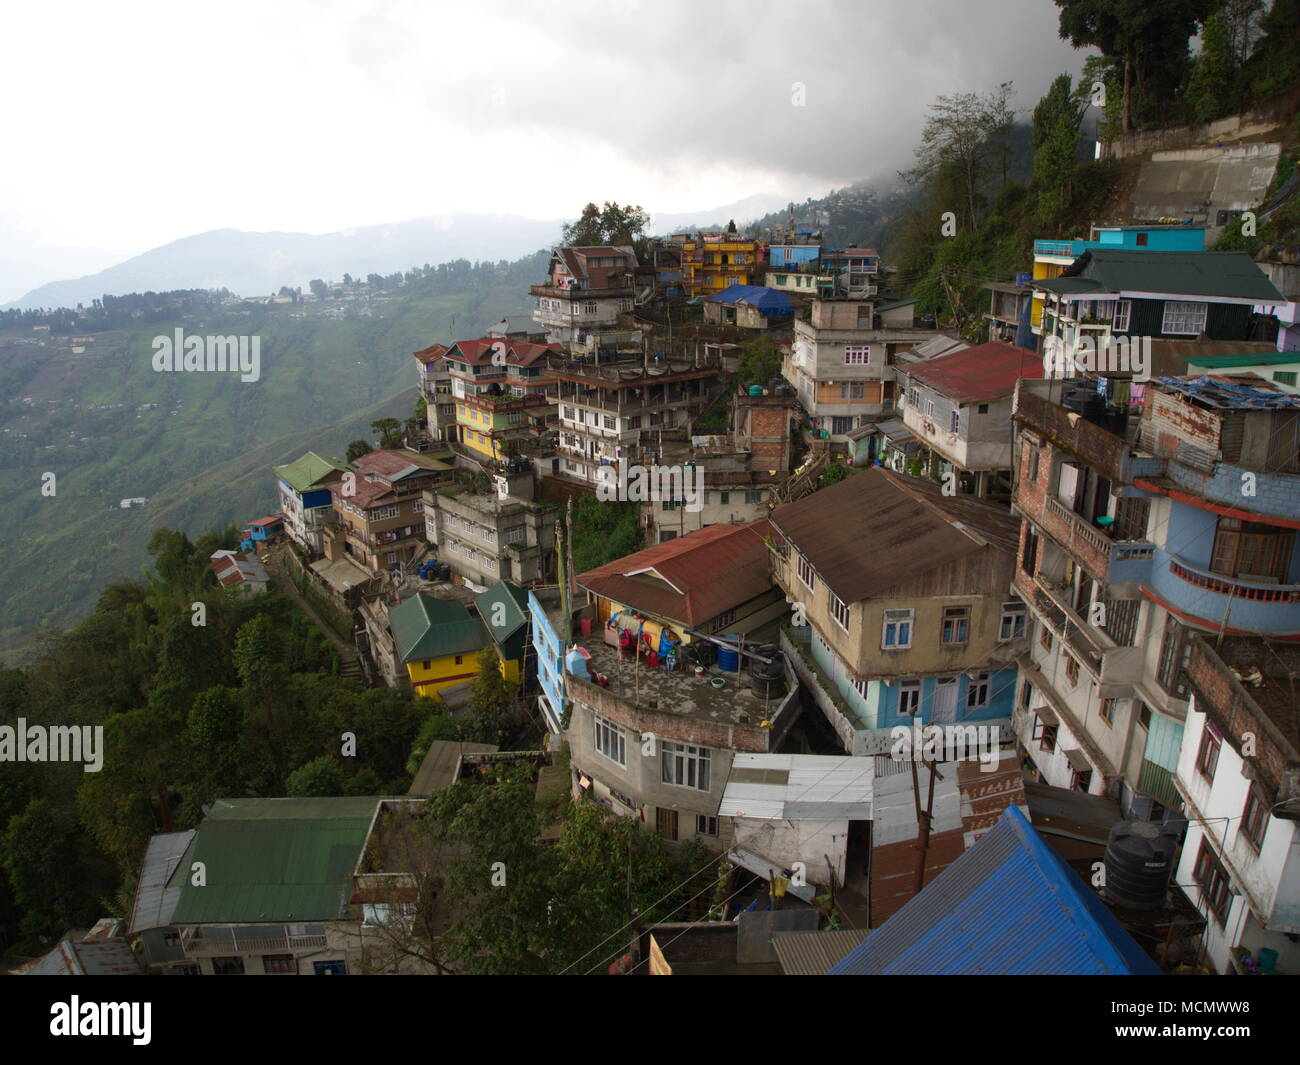 Gangtok, Sikkim, India , 17 aprile 2011 : La vista sul centro della città di Gangtok. Gangtok è la capitale del Sikkim stato in India. Foto Stock